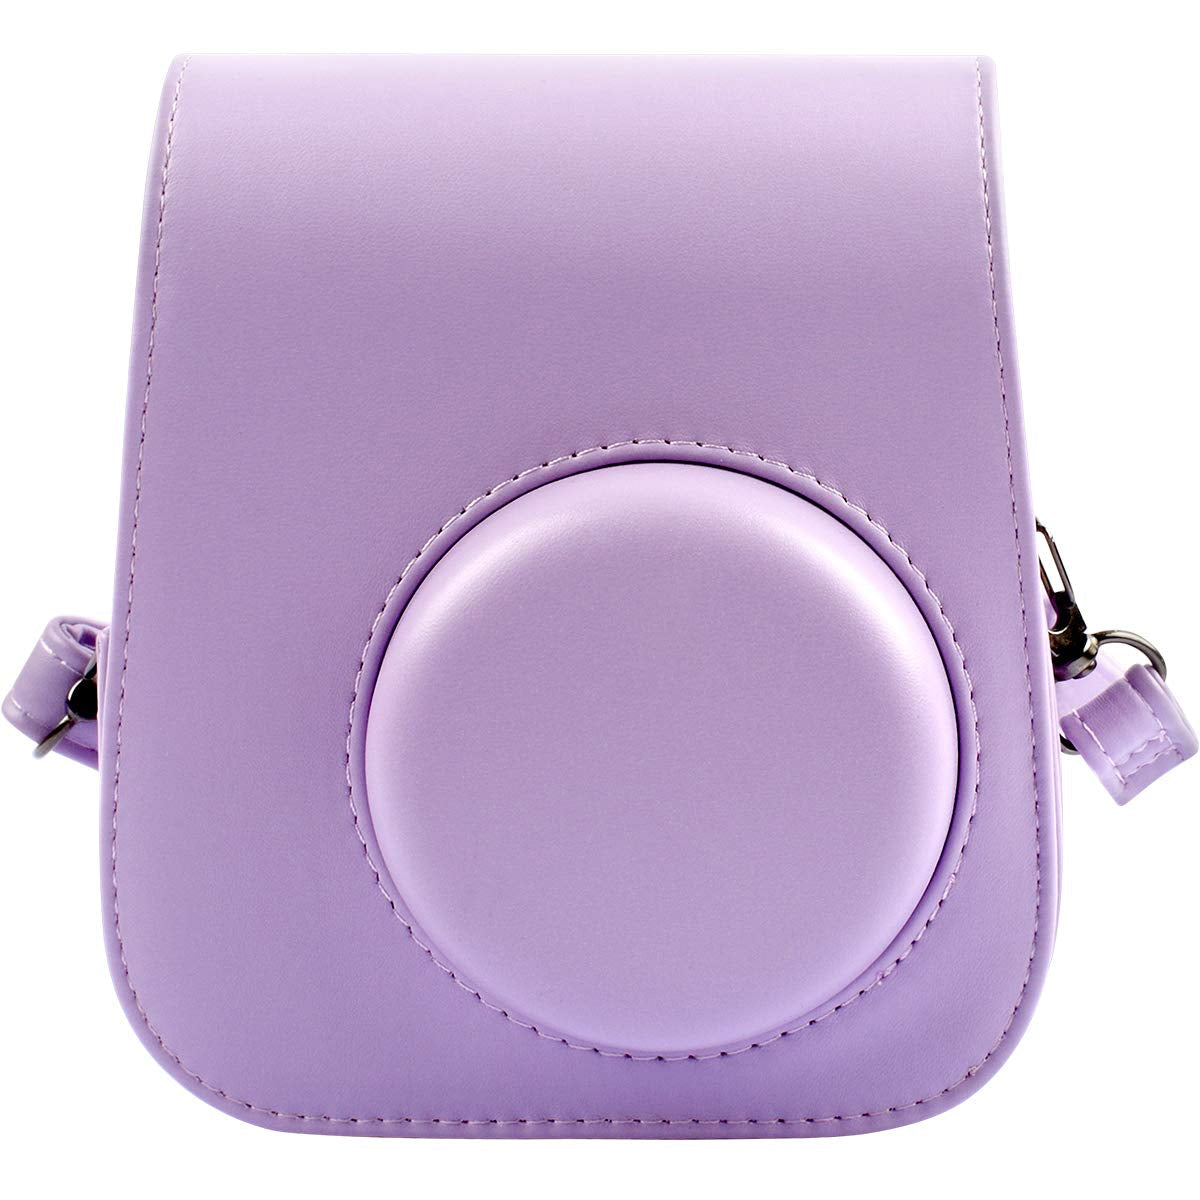 ZENKO MINI 11 INSTAX CAMERA POUCH BAG (Lilac Purple)